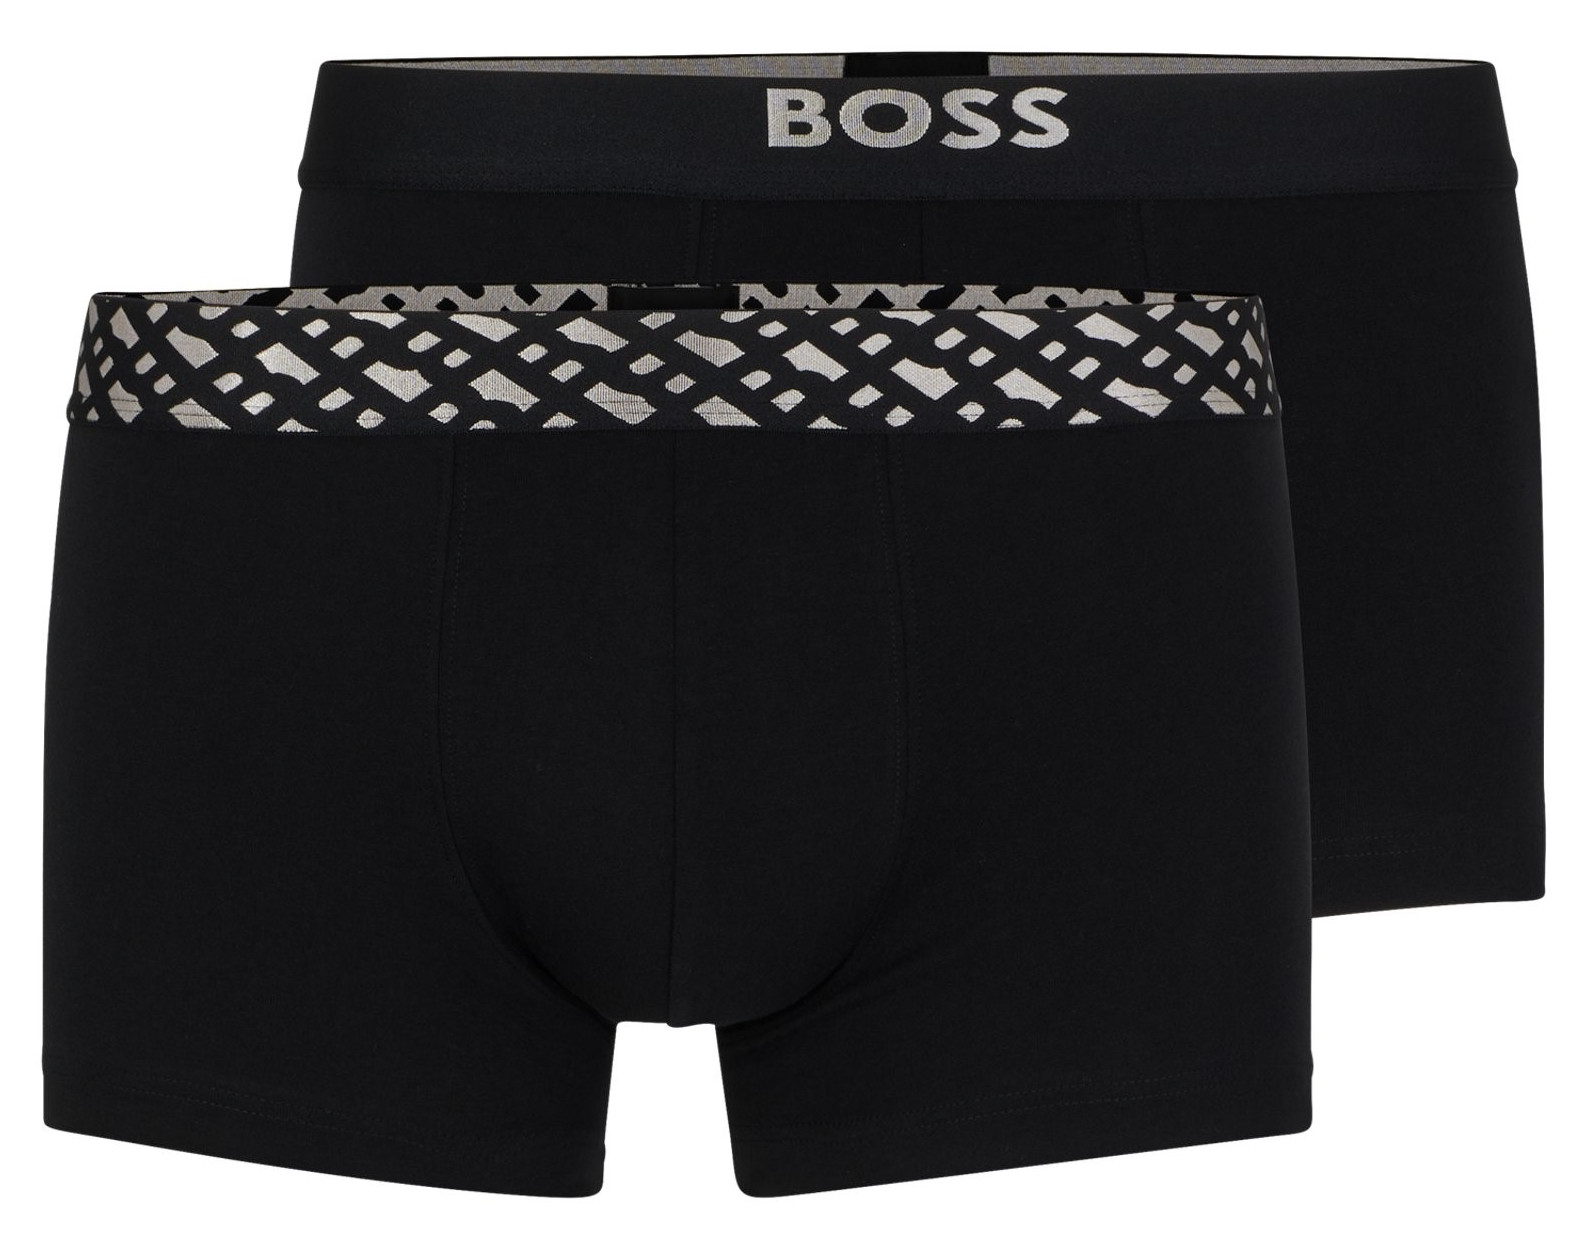 Hugo Boss 2 PACK - pánske boxerky BOSS 50499823-001 XL